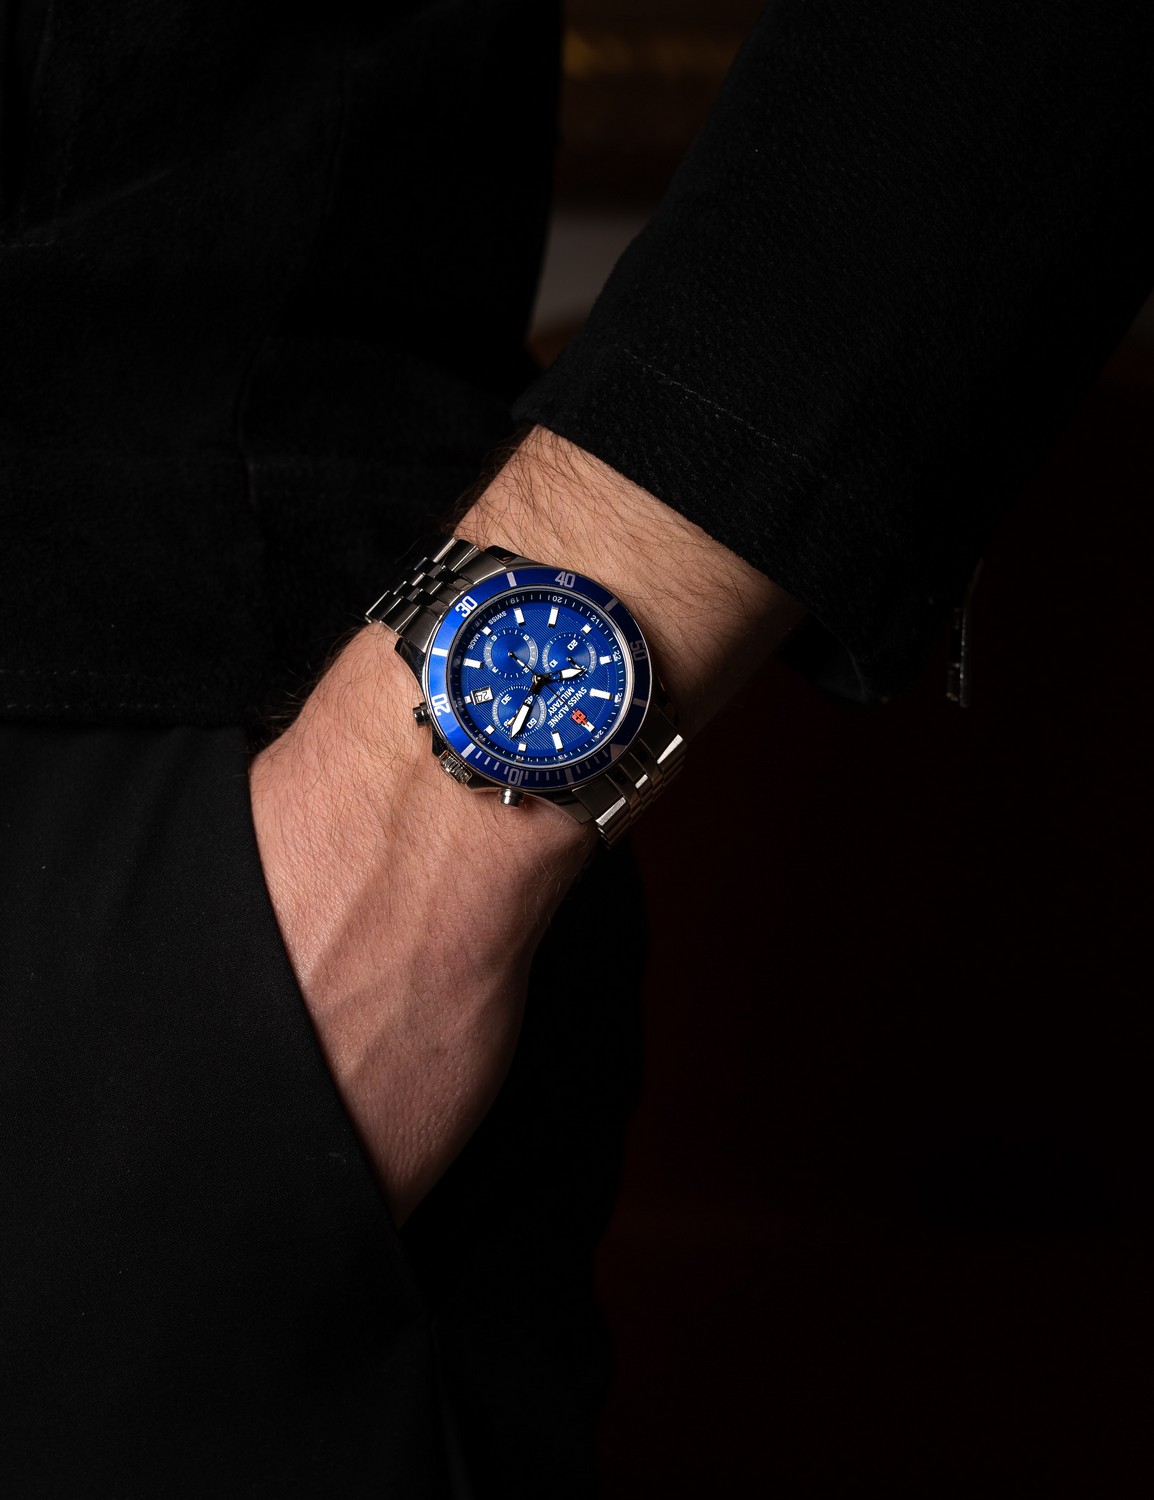 SWISS ALPINE MILITARY  Мужские швейцарские часы, кварцевый механизм, сталь, 42 мм